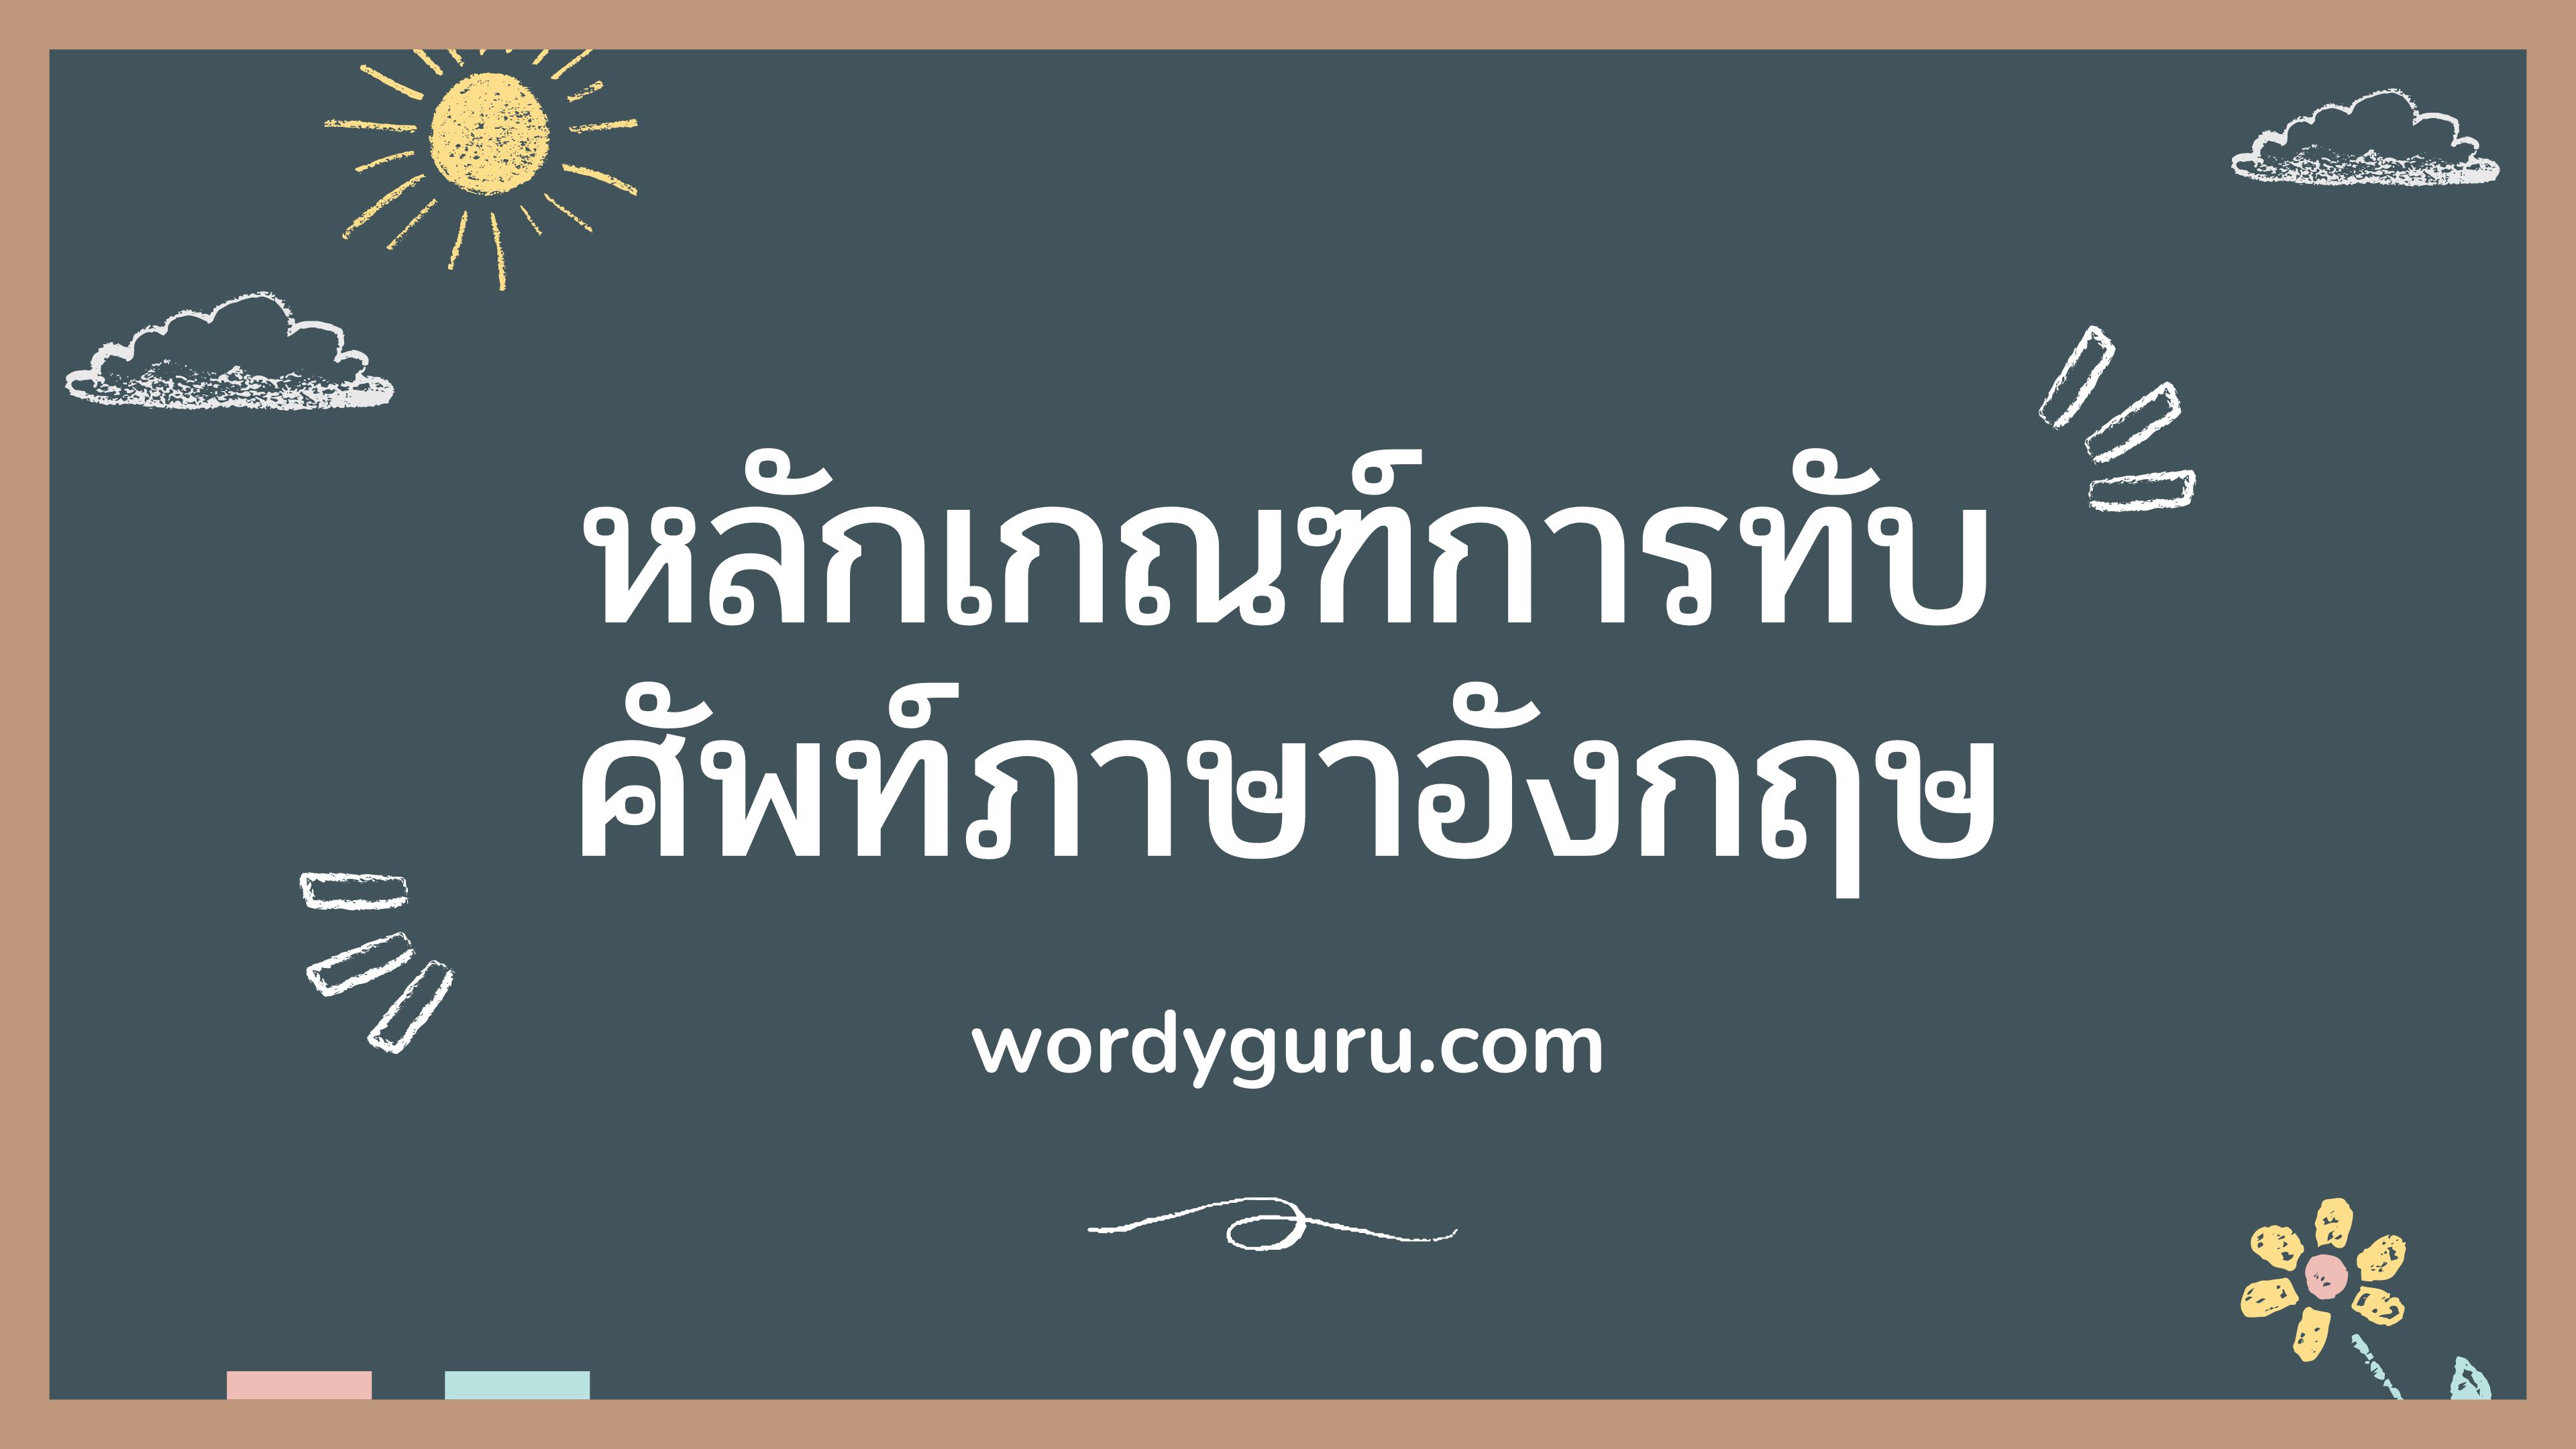 การทับศัพท์ คือ การถอดอักษรในภาษาเดิม และเขียนให้อยู่ในรูปภาษาไทยที่อ่านได้สะดวกและเข้าใจ ซึ่งจะมีข้อยกเว้นตามหลักเกณฑ์การทับศัพท์ได้